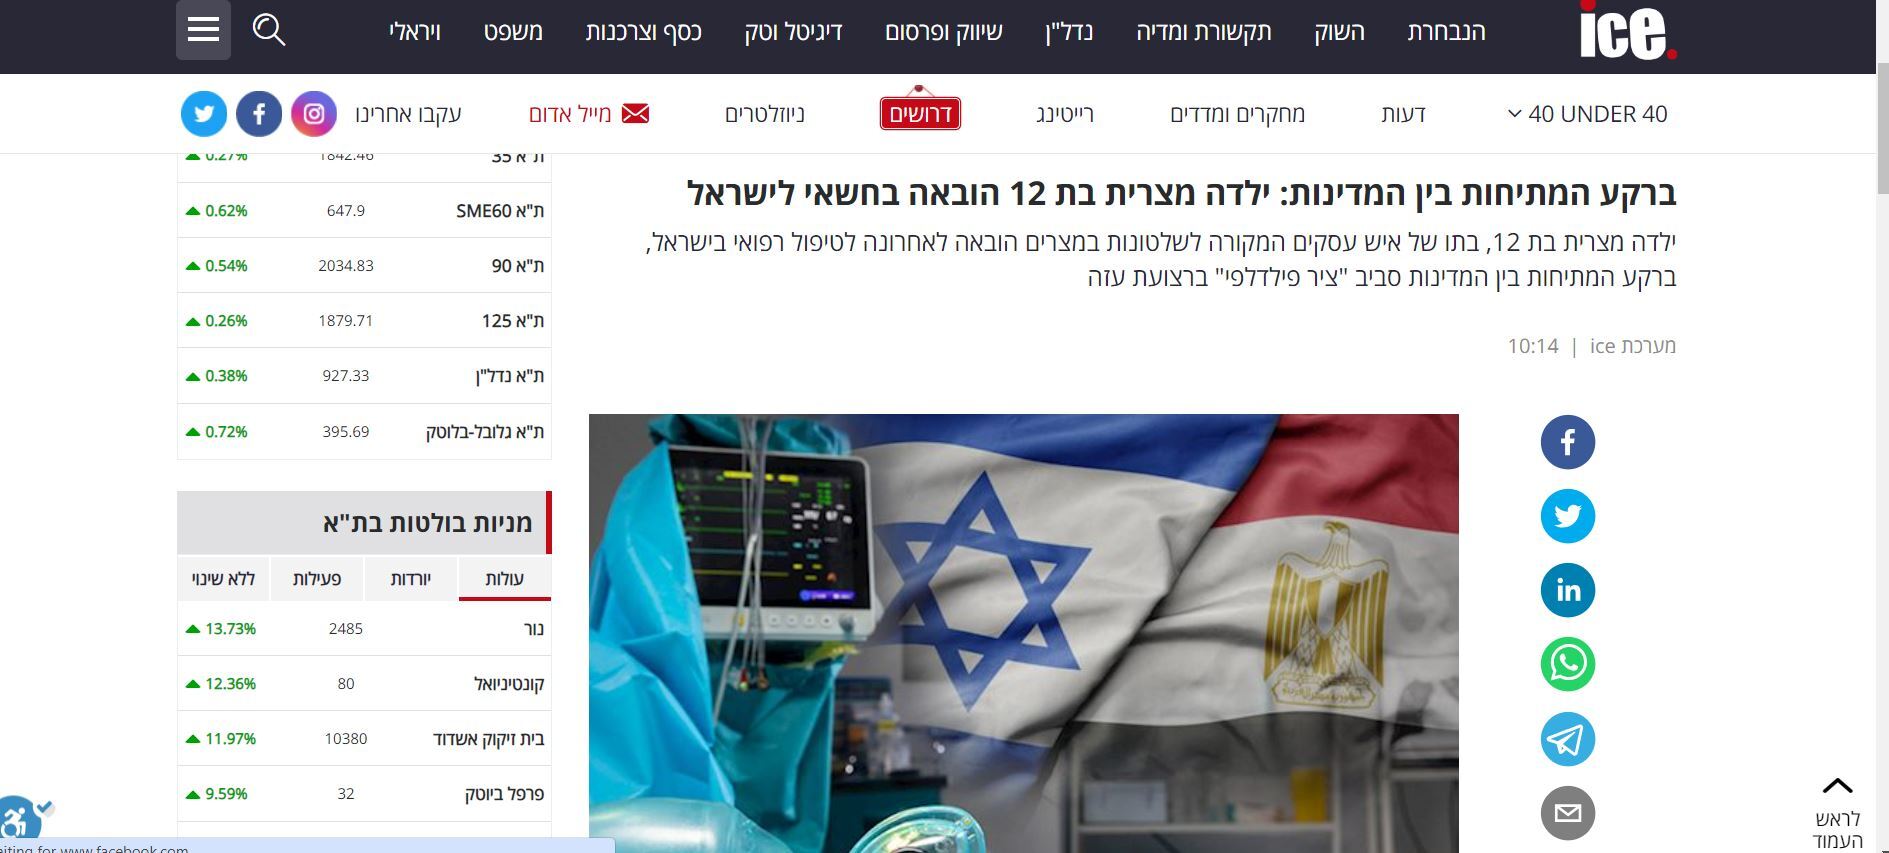 وسائل إعلام عبرية: ابنة رجل أعمال مصري تتلقى العلاج سرا في إسرائيل